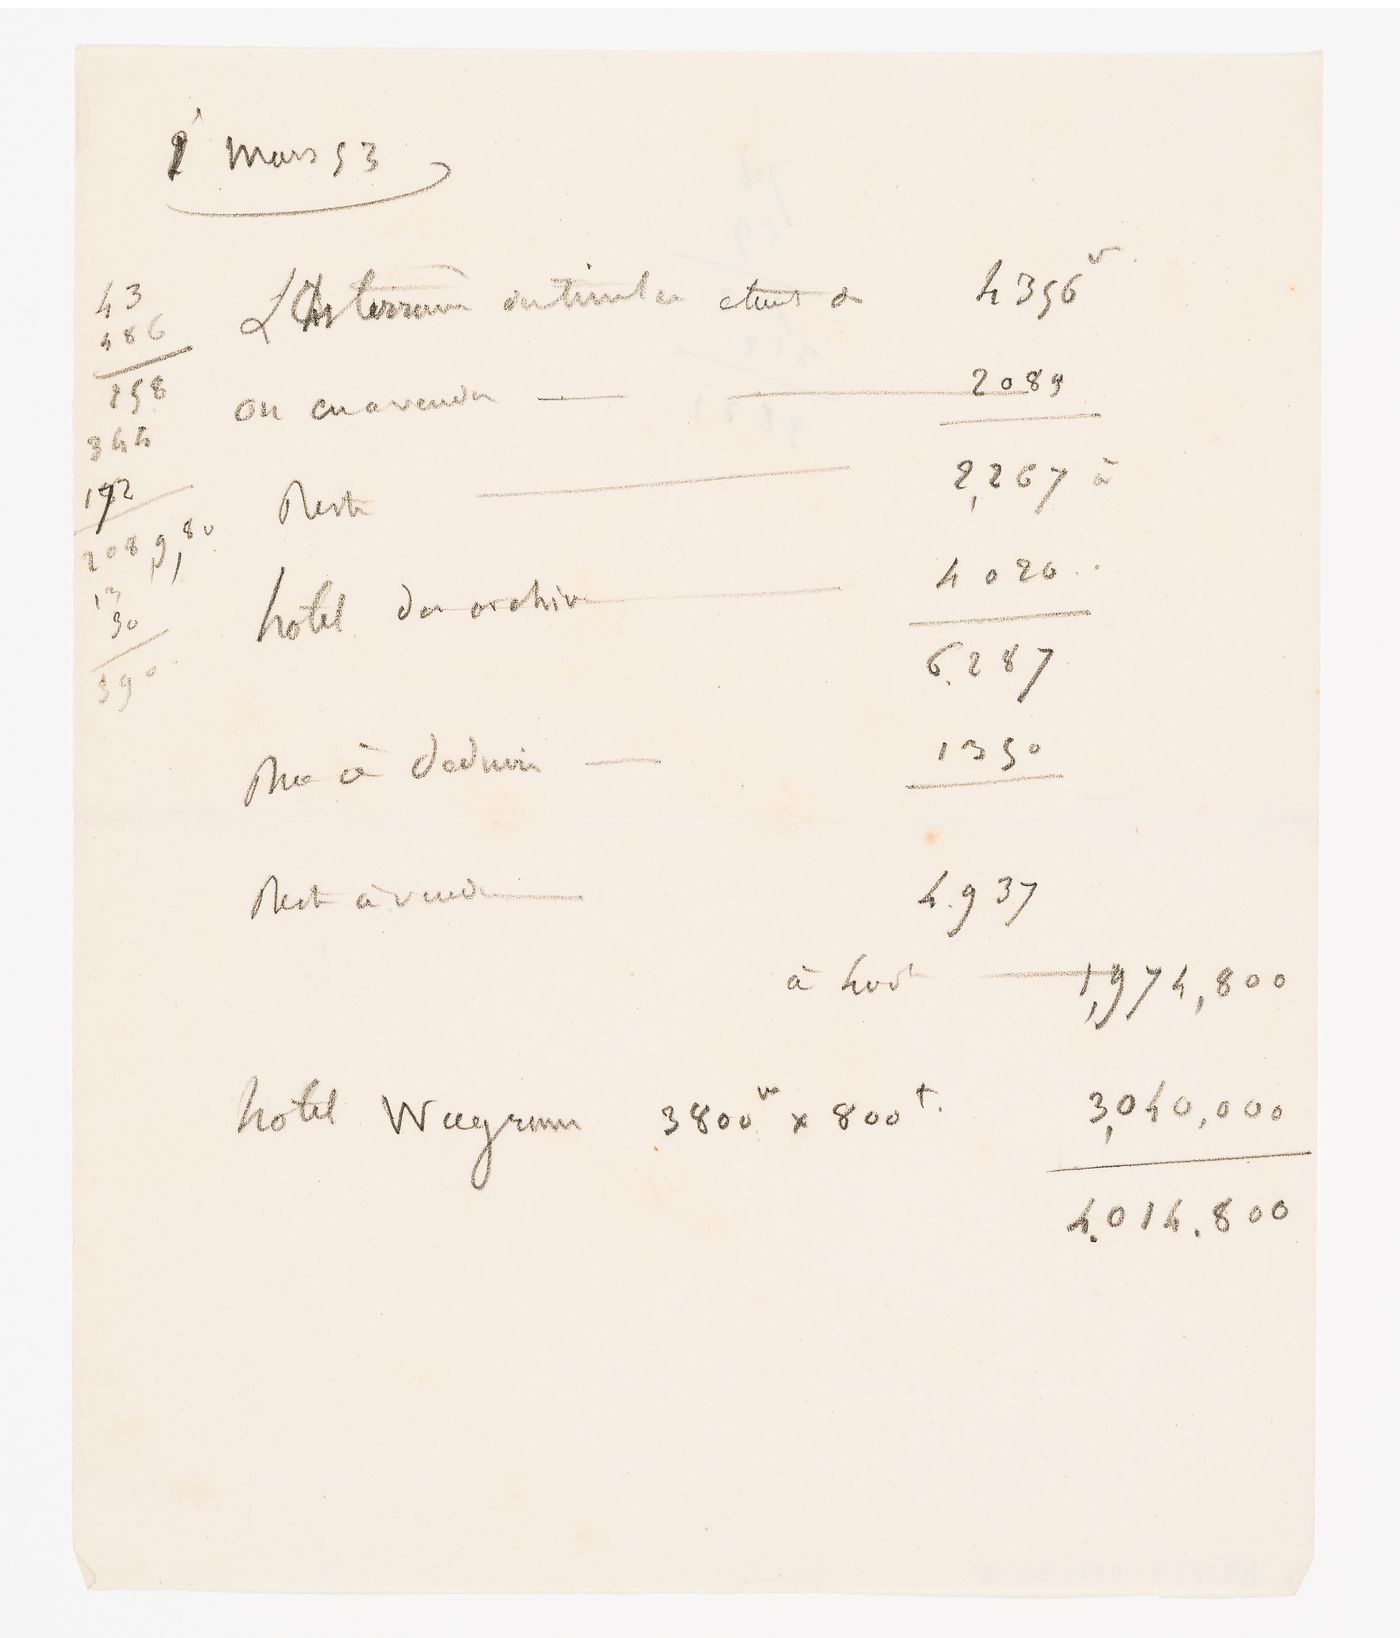 Cost estimates for a project for an opera house for the Théâtre Royal Italien on the Ministère des Affaires Étrangères and the Hôtel du Timbre site